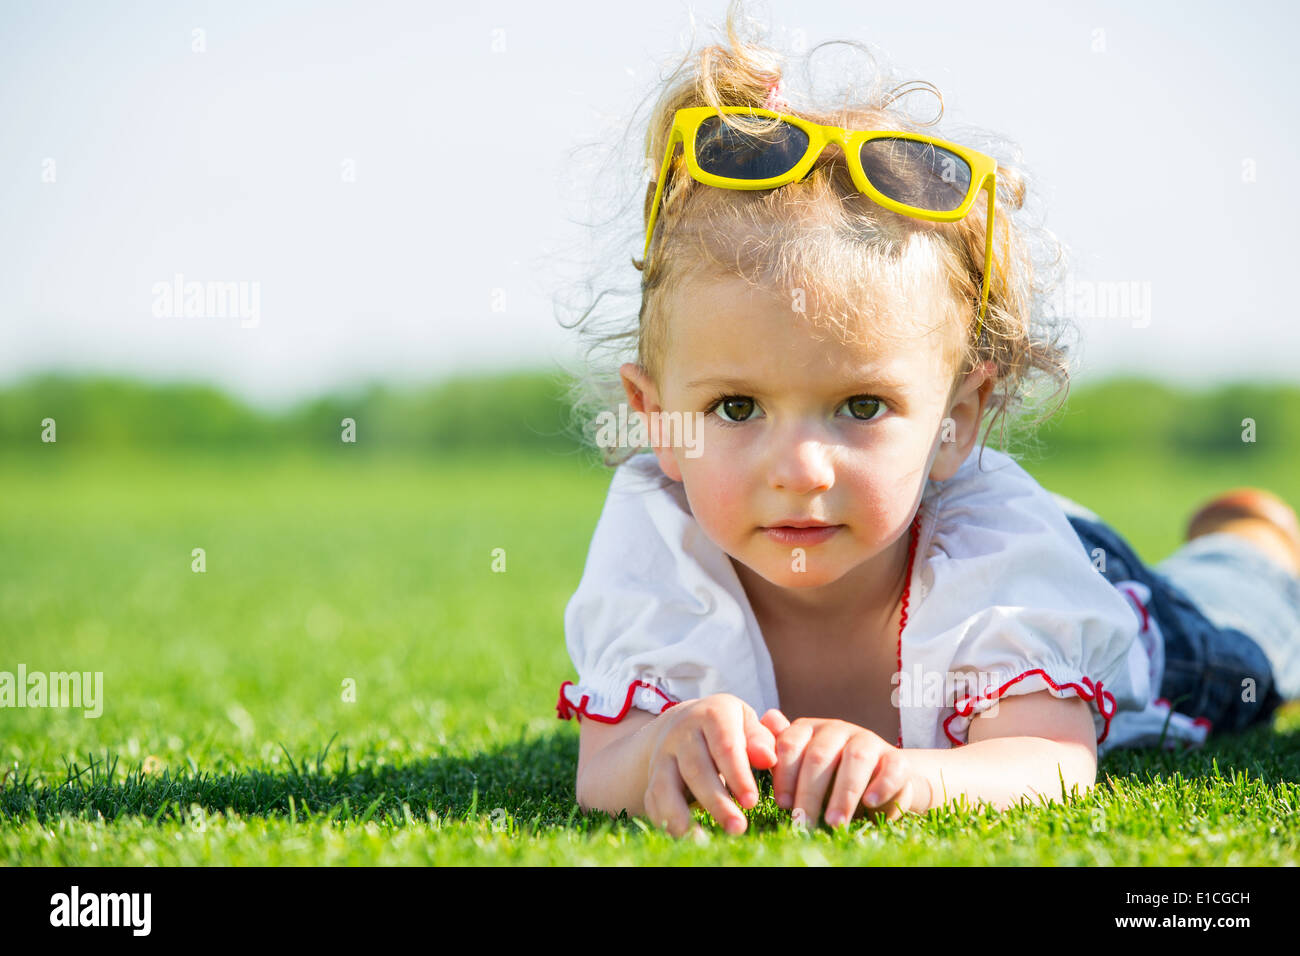 Jolie petite fille avec des lunettes de soleil jaune sur le dessus de sa tête, allongé sur une herbe verte fraîche dans un champ Banque D'Images